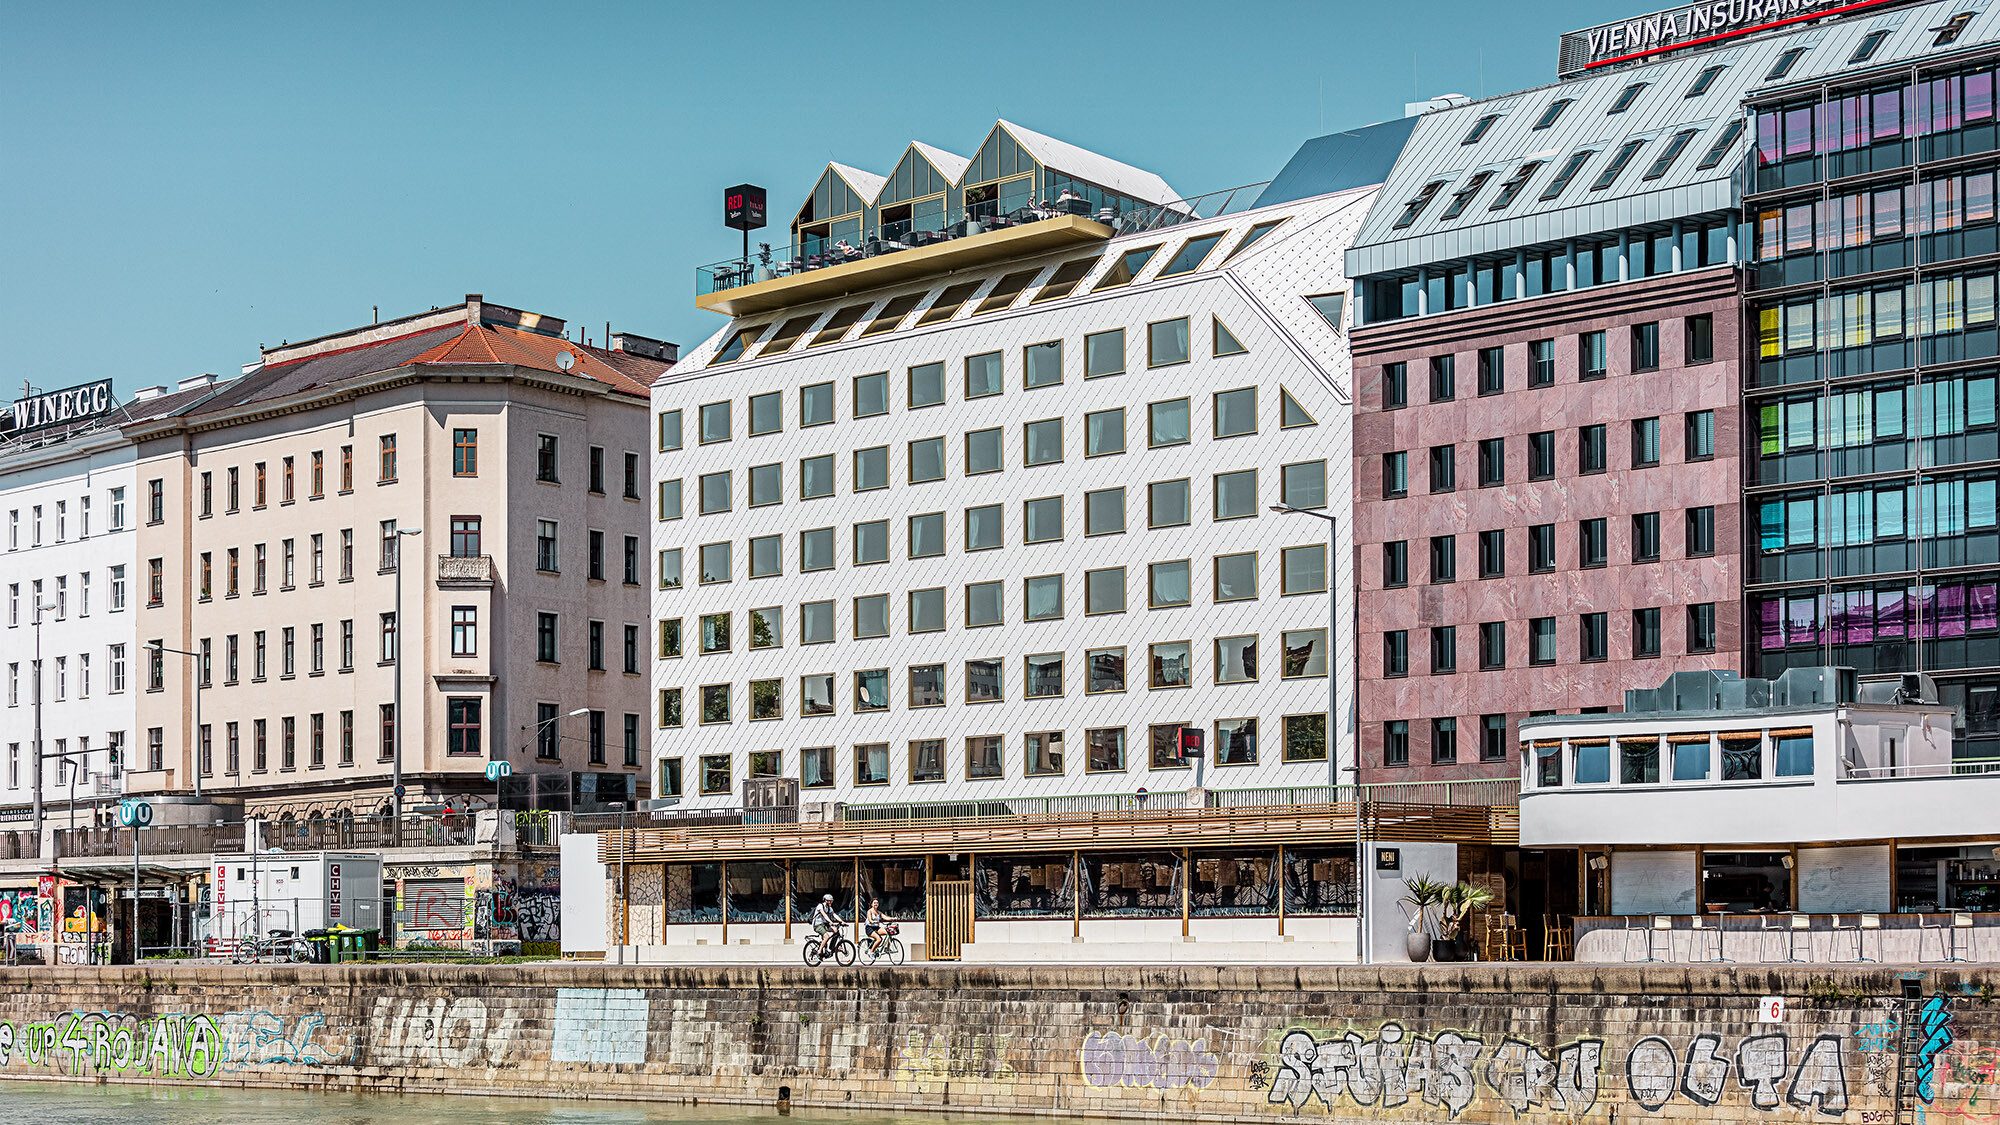 Das Hotel aus der Seitenperspektive samt seiner gebauten Umgebung, direkt vor ihm erstreckt sich der Donaukanal.